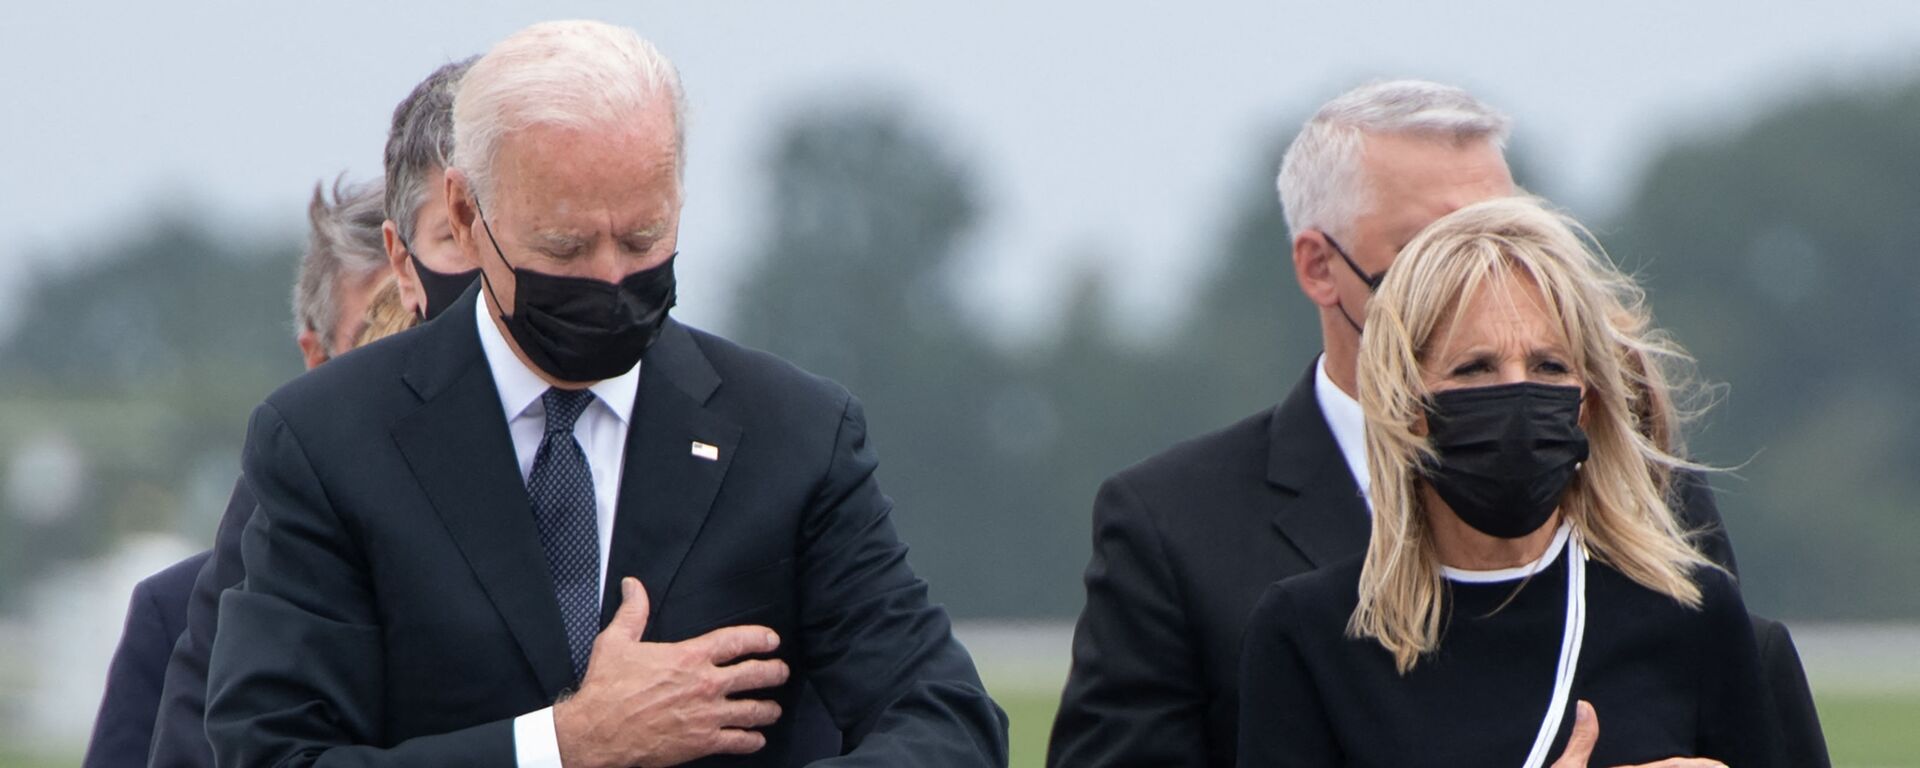 Tổng thống Hoa Kỳ Joe Biden cùng phu nhân tại căn cứ Không quân Dover trong nghi lễ chuyển giao hài cốt một quân nhân Mỹ thiệt mạng ở Afghanistan - Sputnik Việt Nam, 1920, 18.10.2021